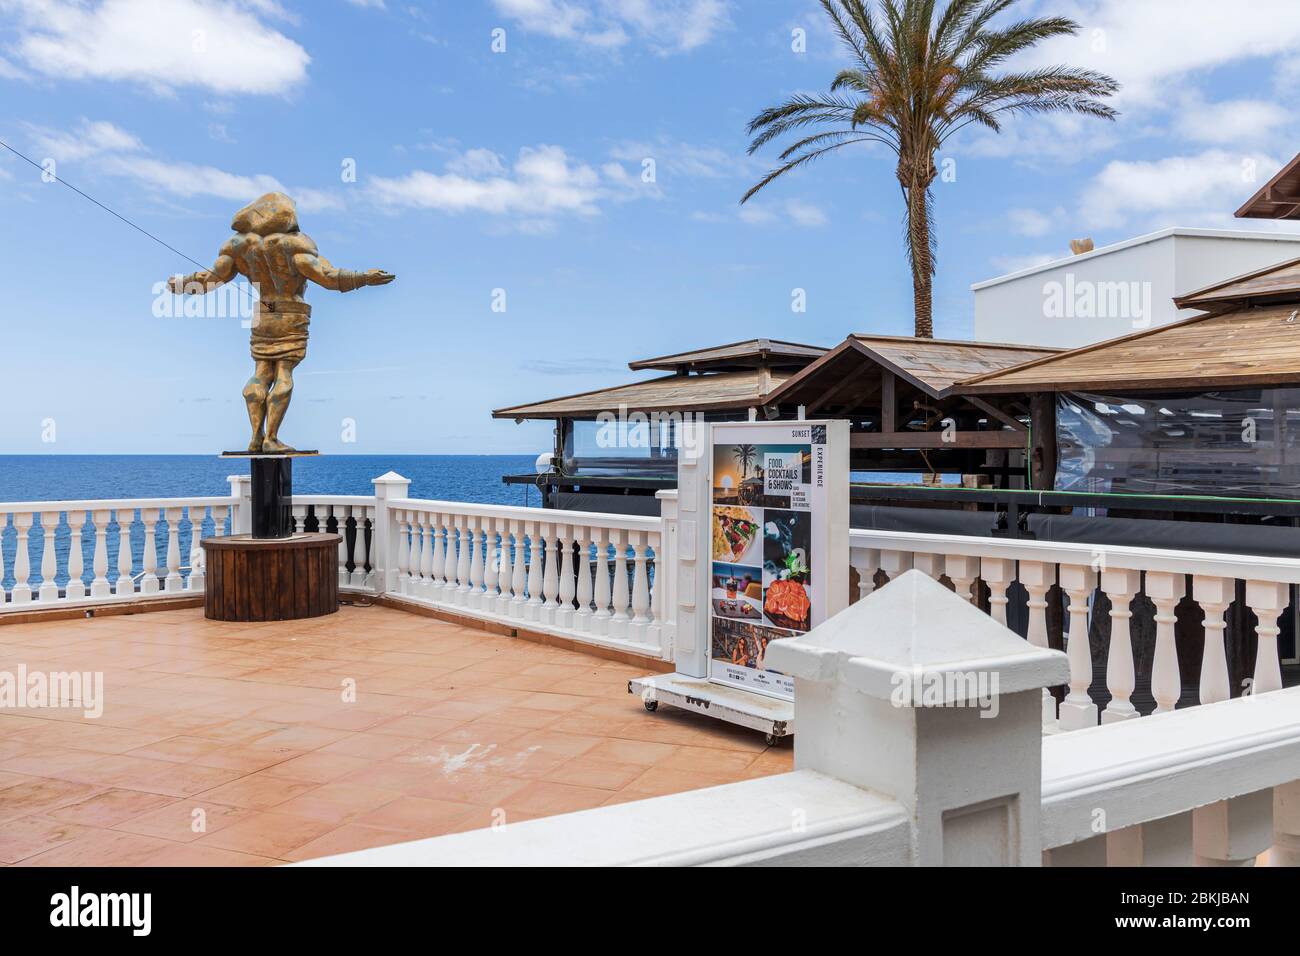 Bar-terrasse vide à Playa Paraiso pendant le covid 19 dans la station touristique de Costa Adeje, Tenerife, îles Canaries, Espagne Banque D'Images